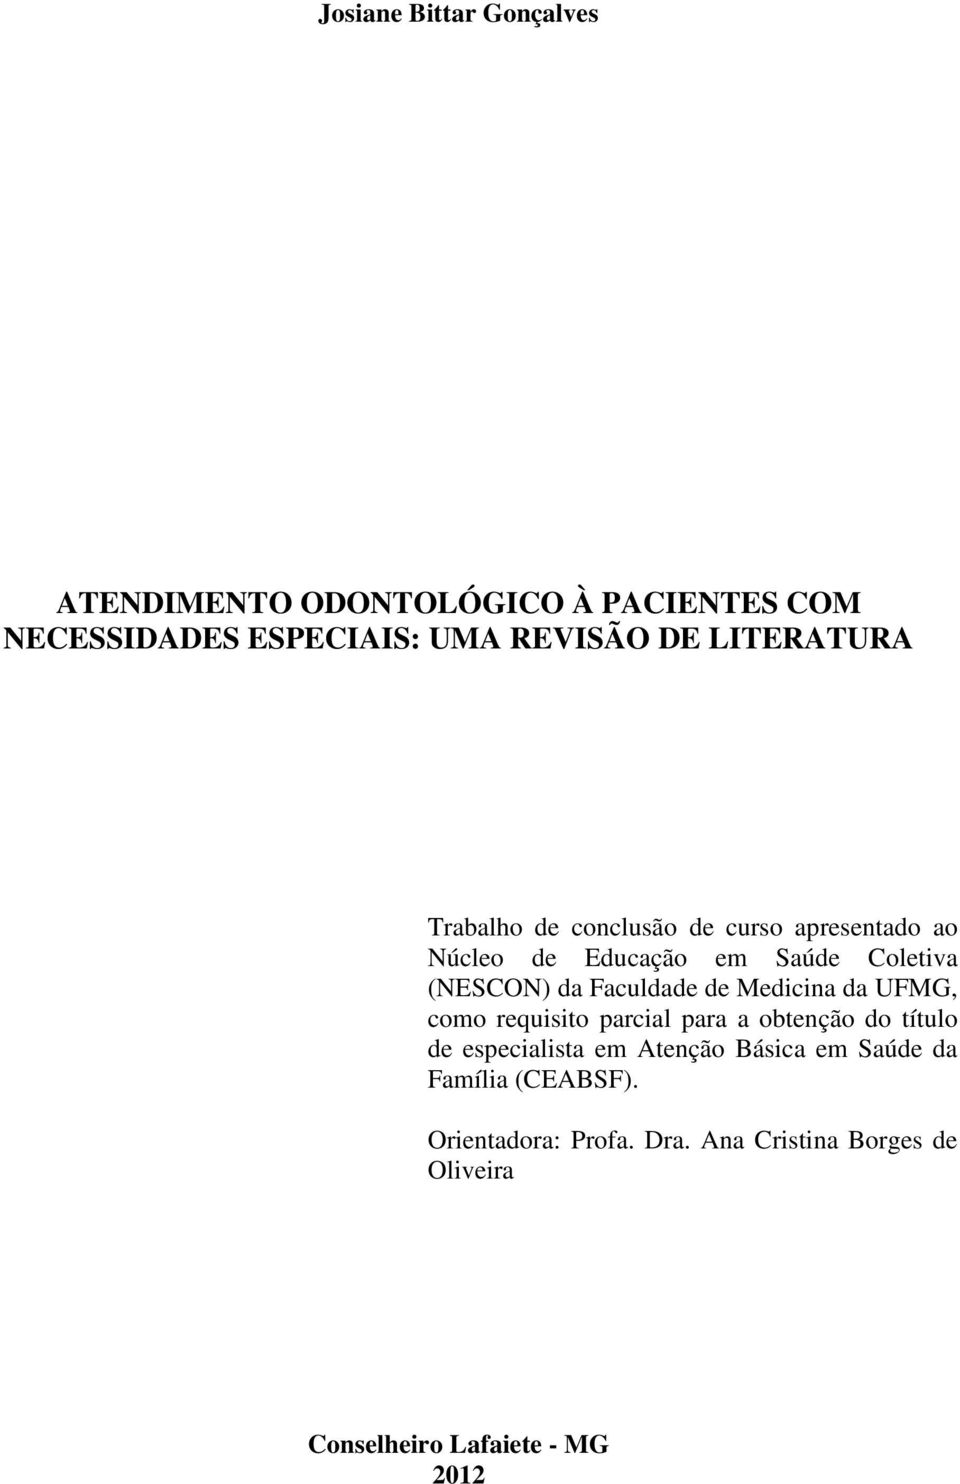 Faculdade de Medicina da UFMG, como requisito parcial para a obtenção do título de especialista em Atenção